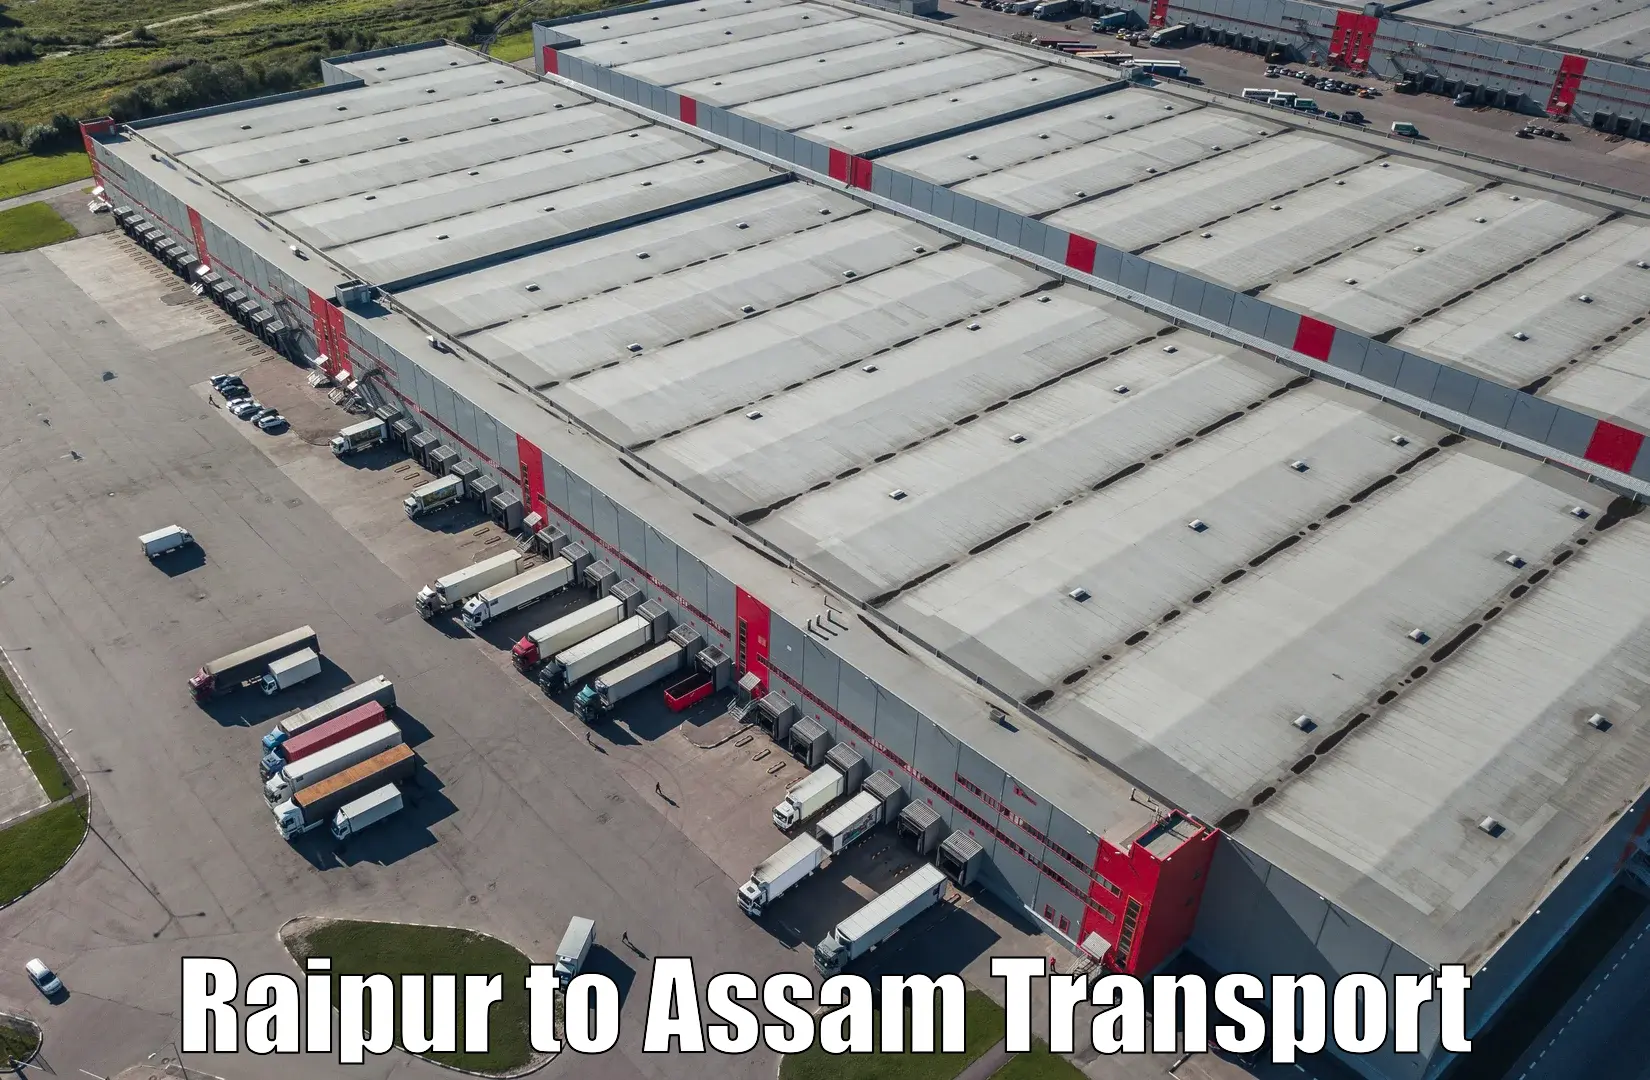 Online transport service Raipur to Dhemaji